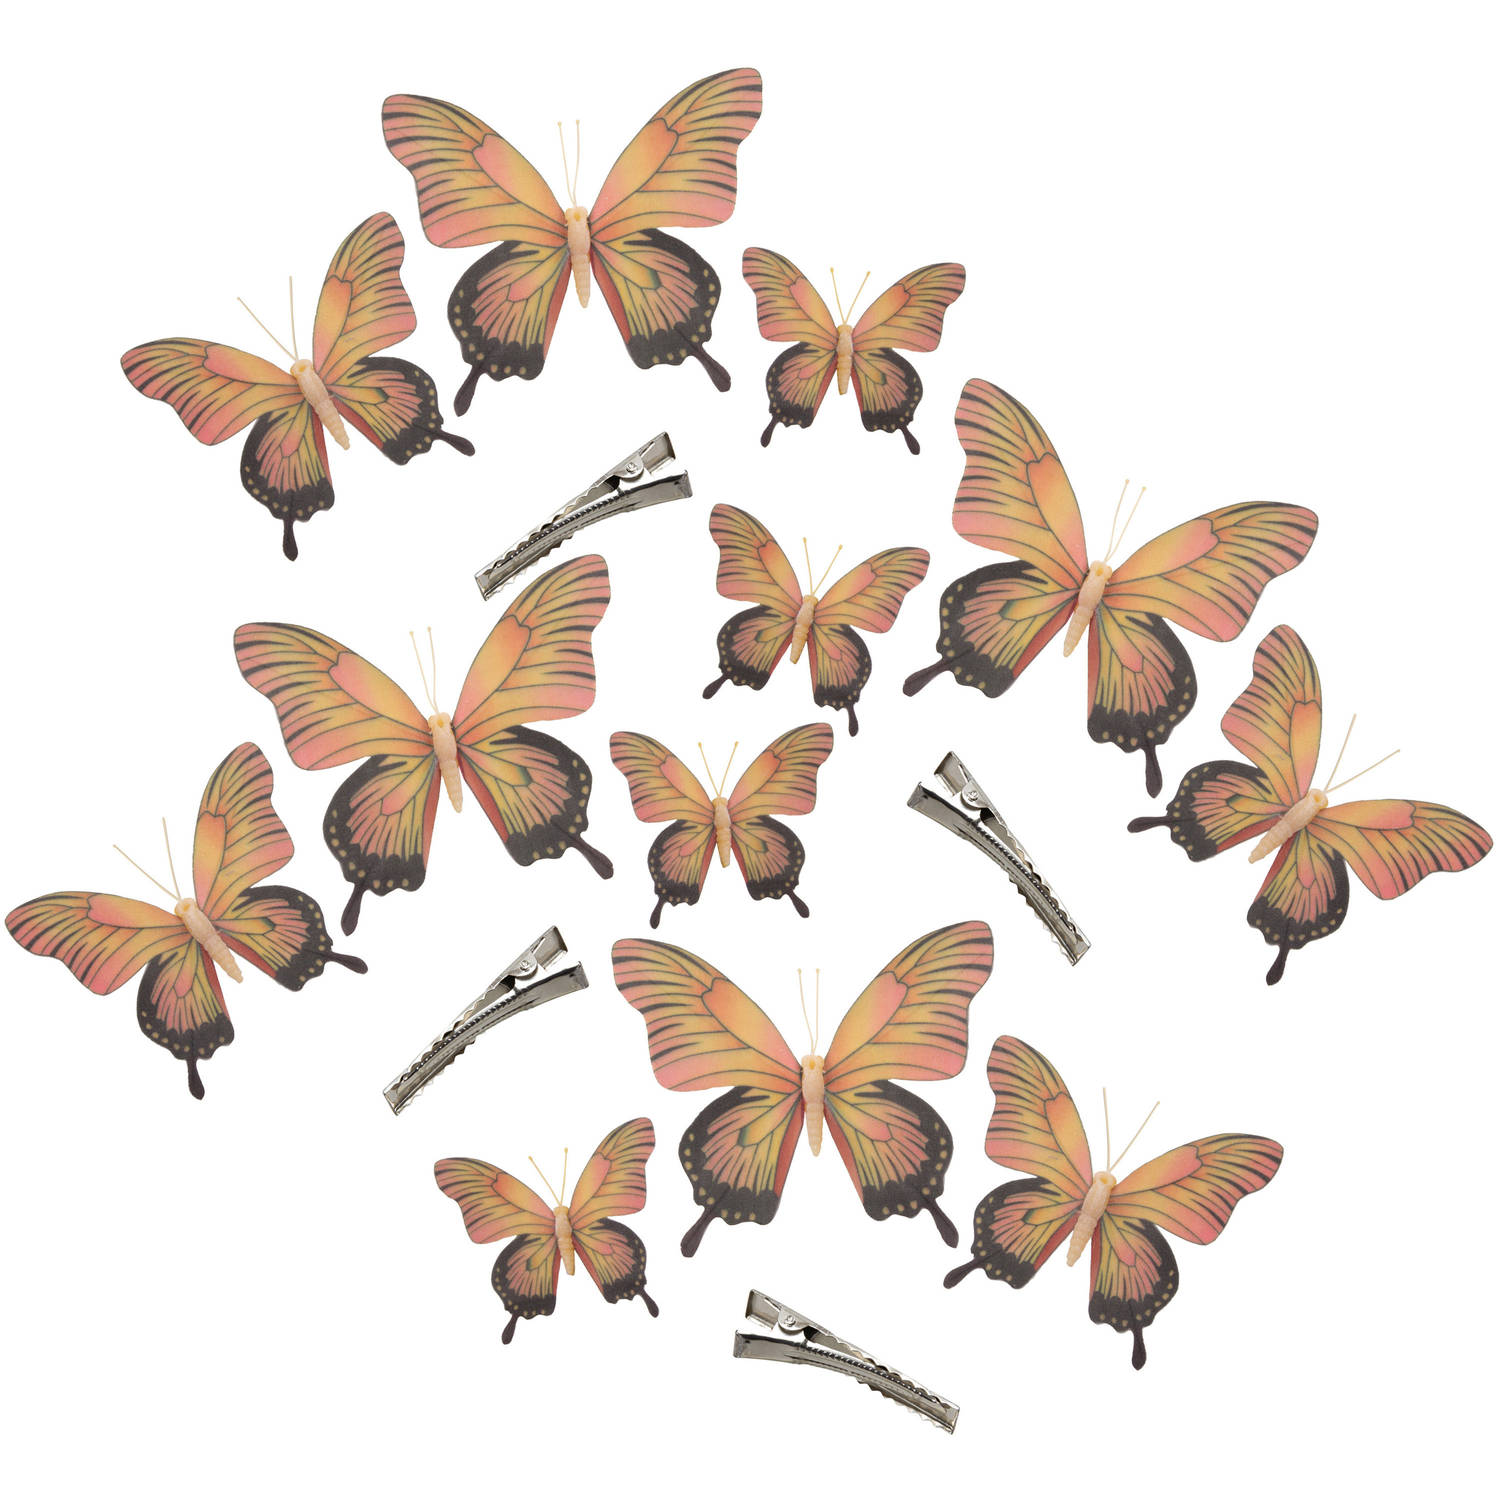 12x Stuks Decoratie Vlinders Op Clip Geel-roze 3 Formaten 12-16-20 Cm Hobbydecoratieobject